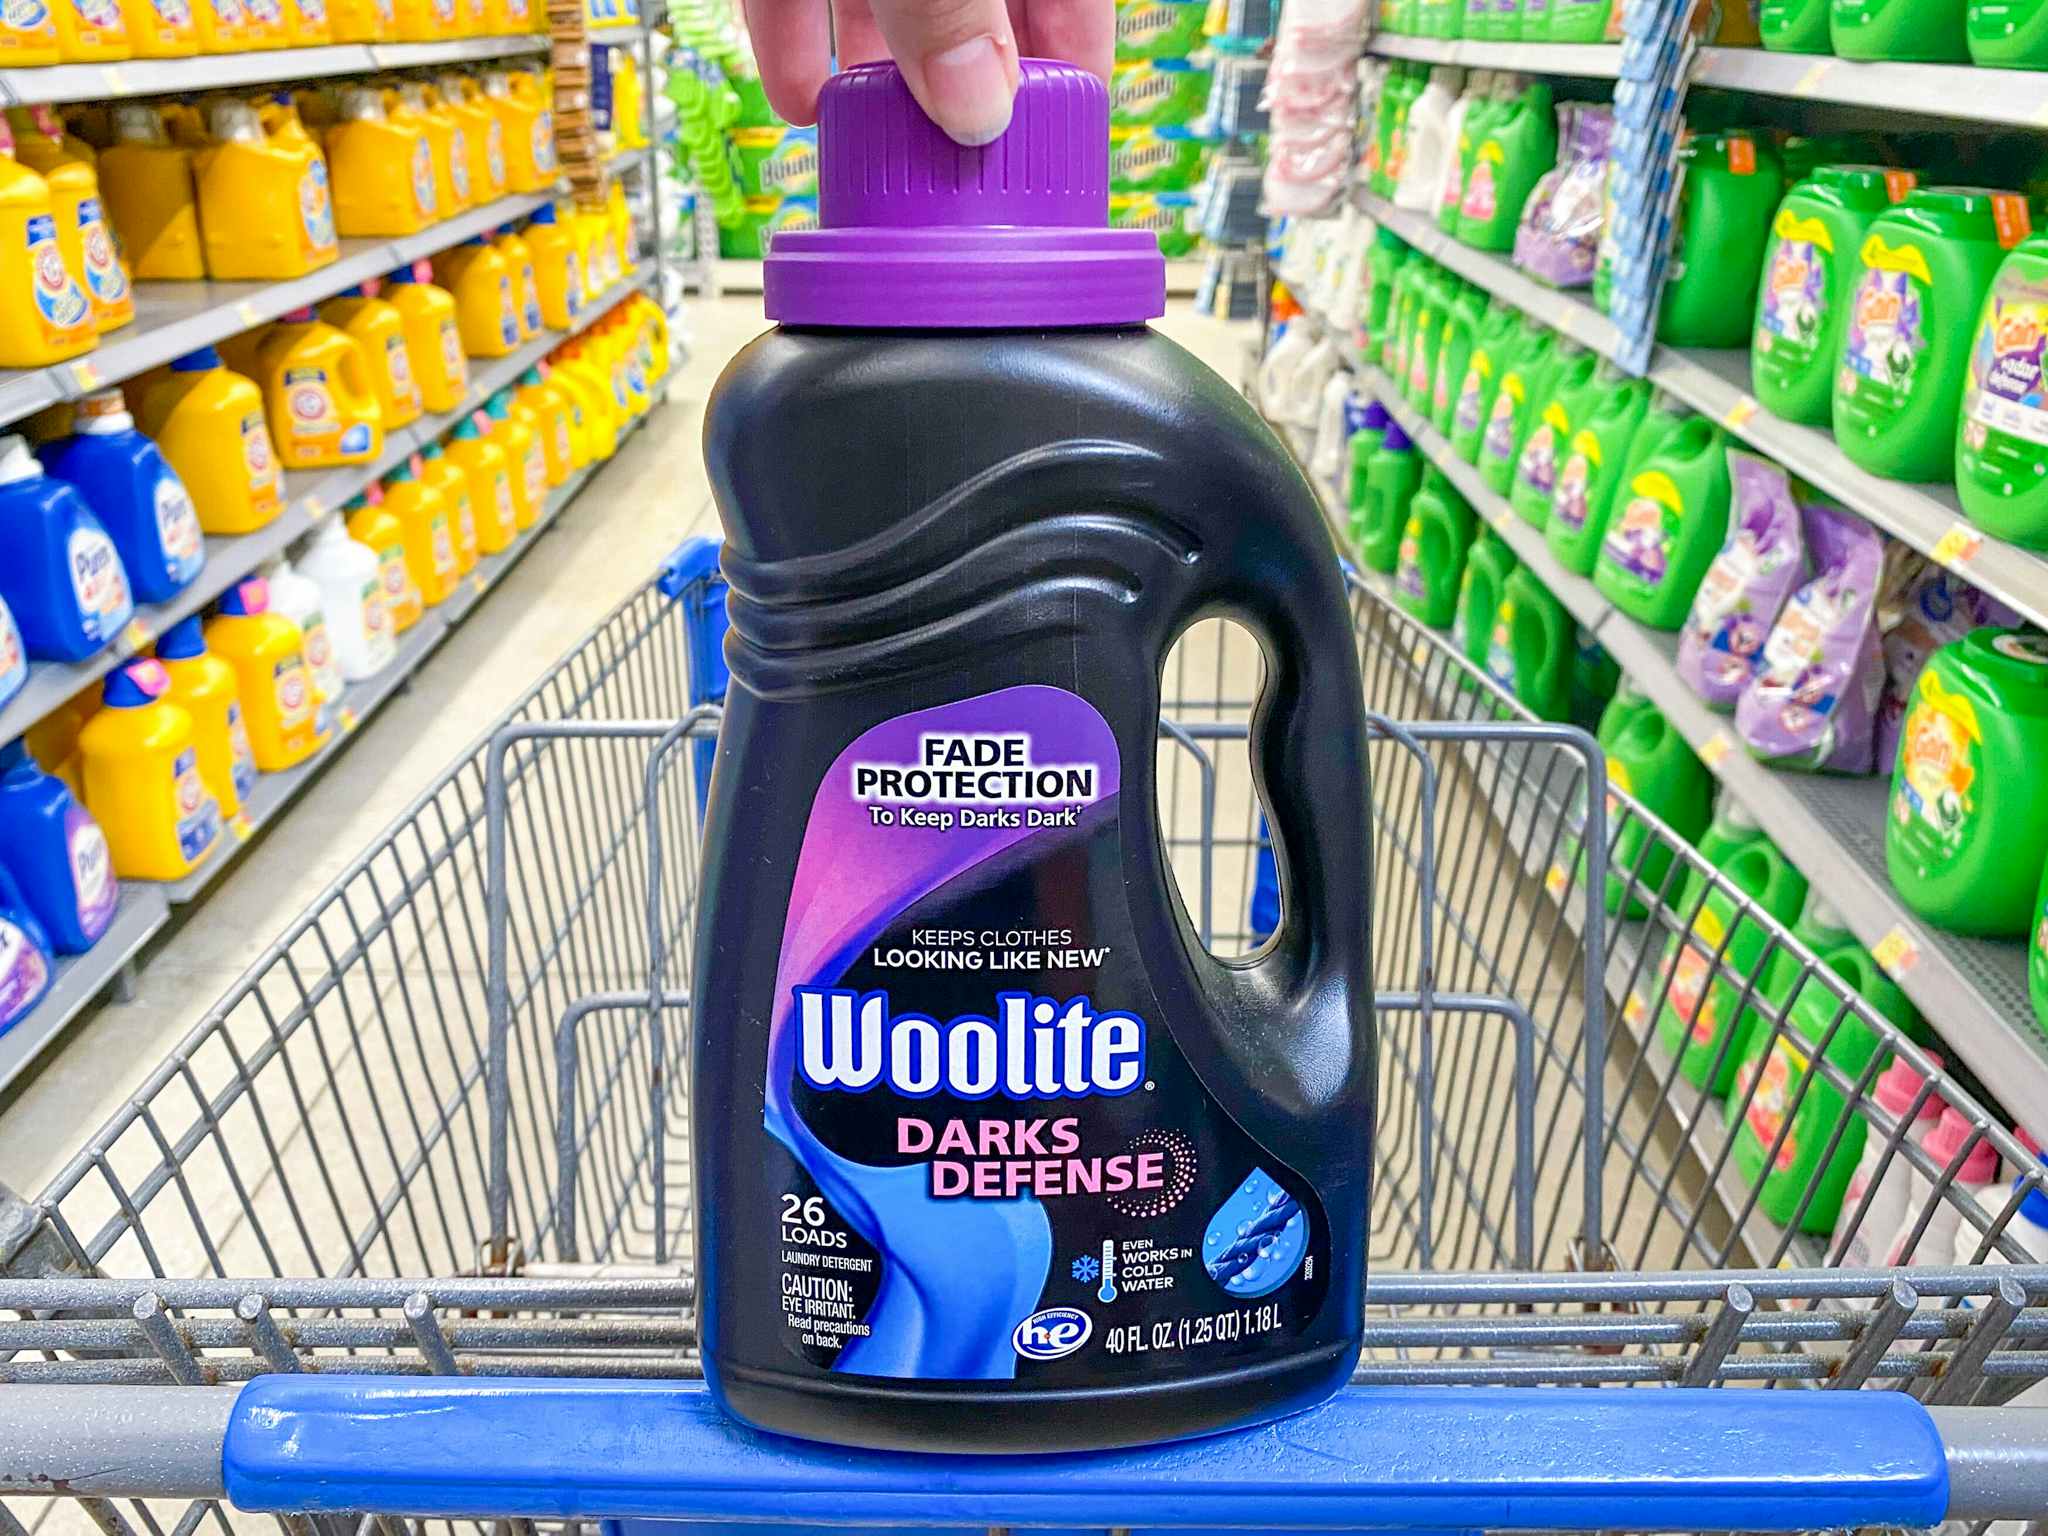 Wolite Darks Defense Liquid Laundry Detergent in Walmart shopping cart